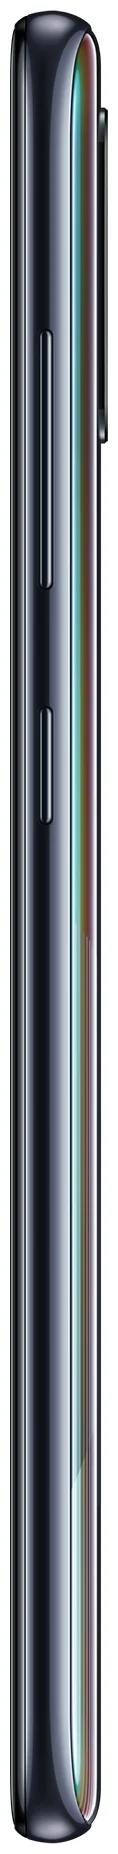 Samsung Galaxy A51 64GB - SIM-карты: 2 (nano SIM)